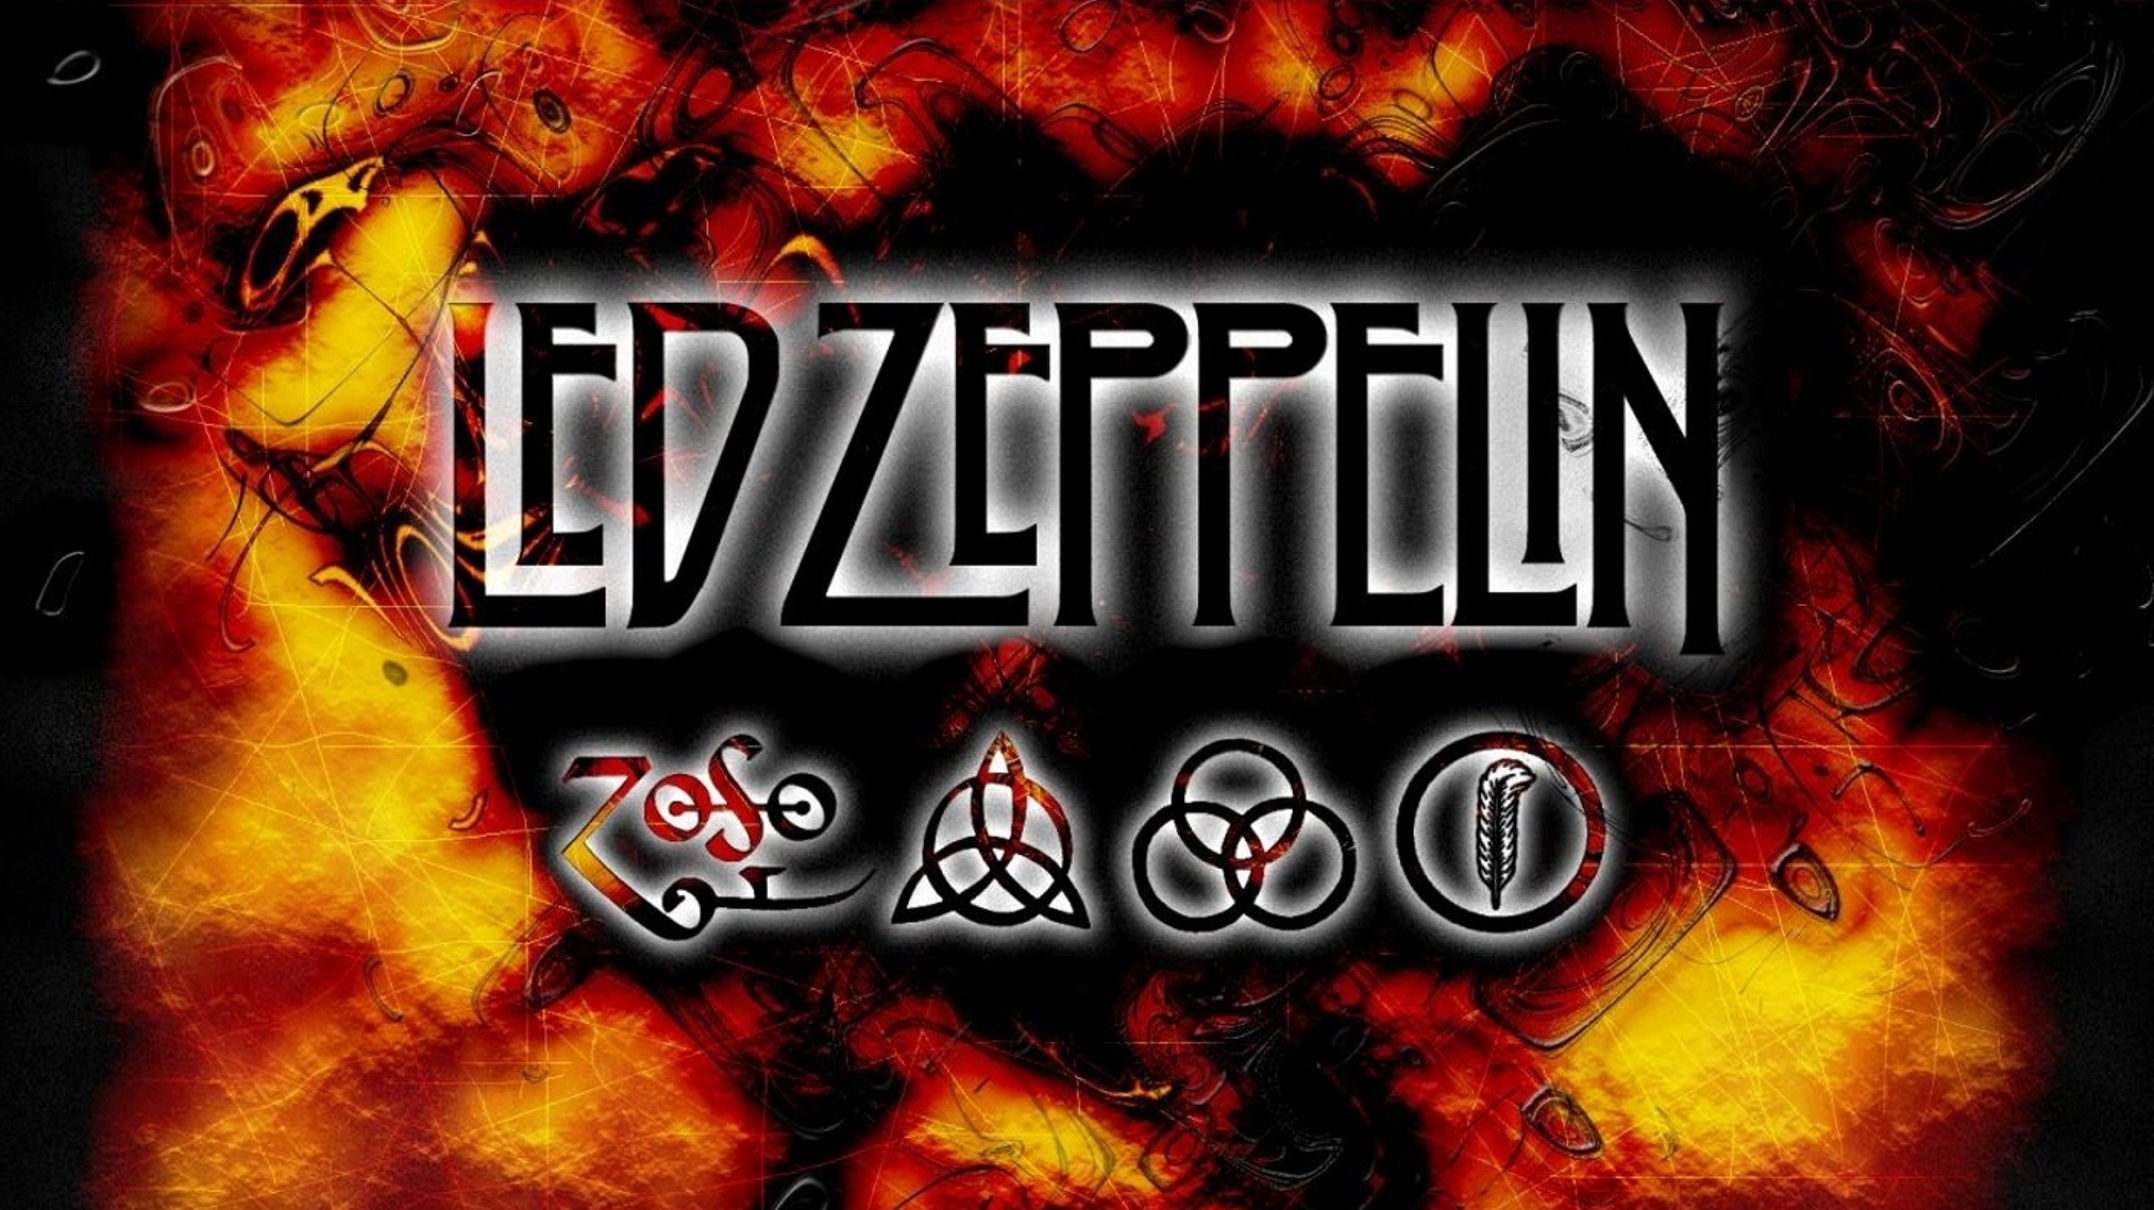 Music Led Zeppelin 2154x1210